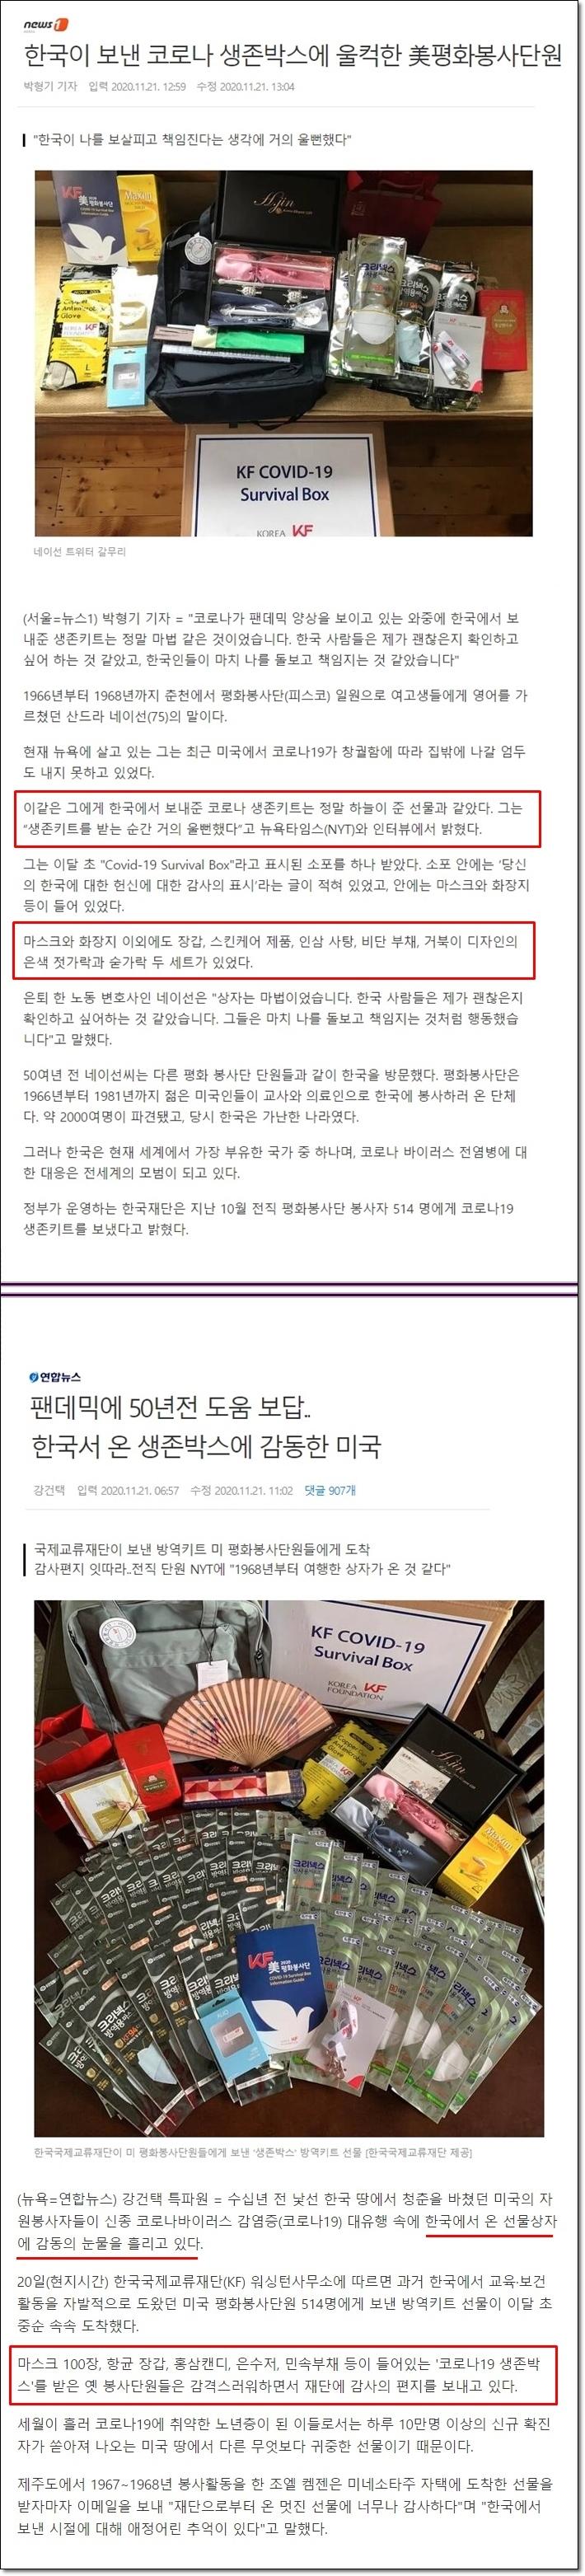 한국이 보낸 코로나 생존박스.jpg